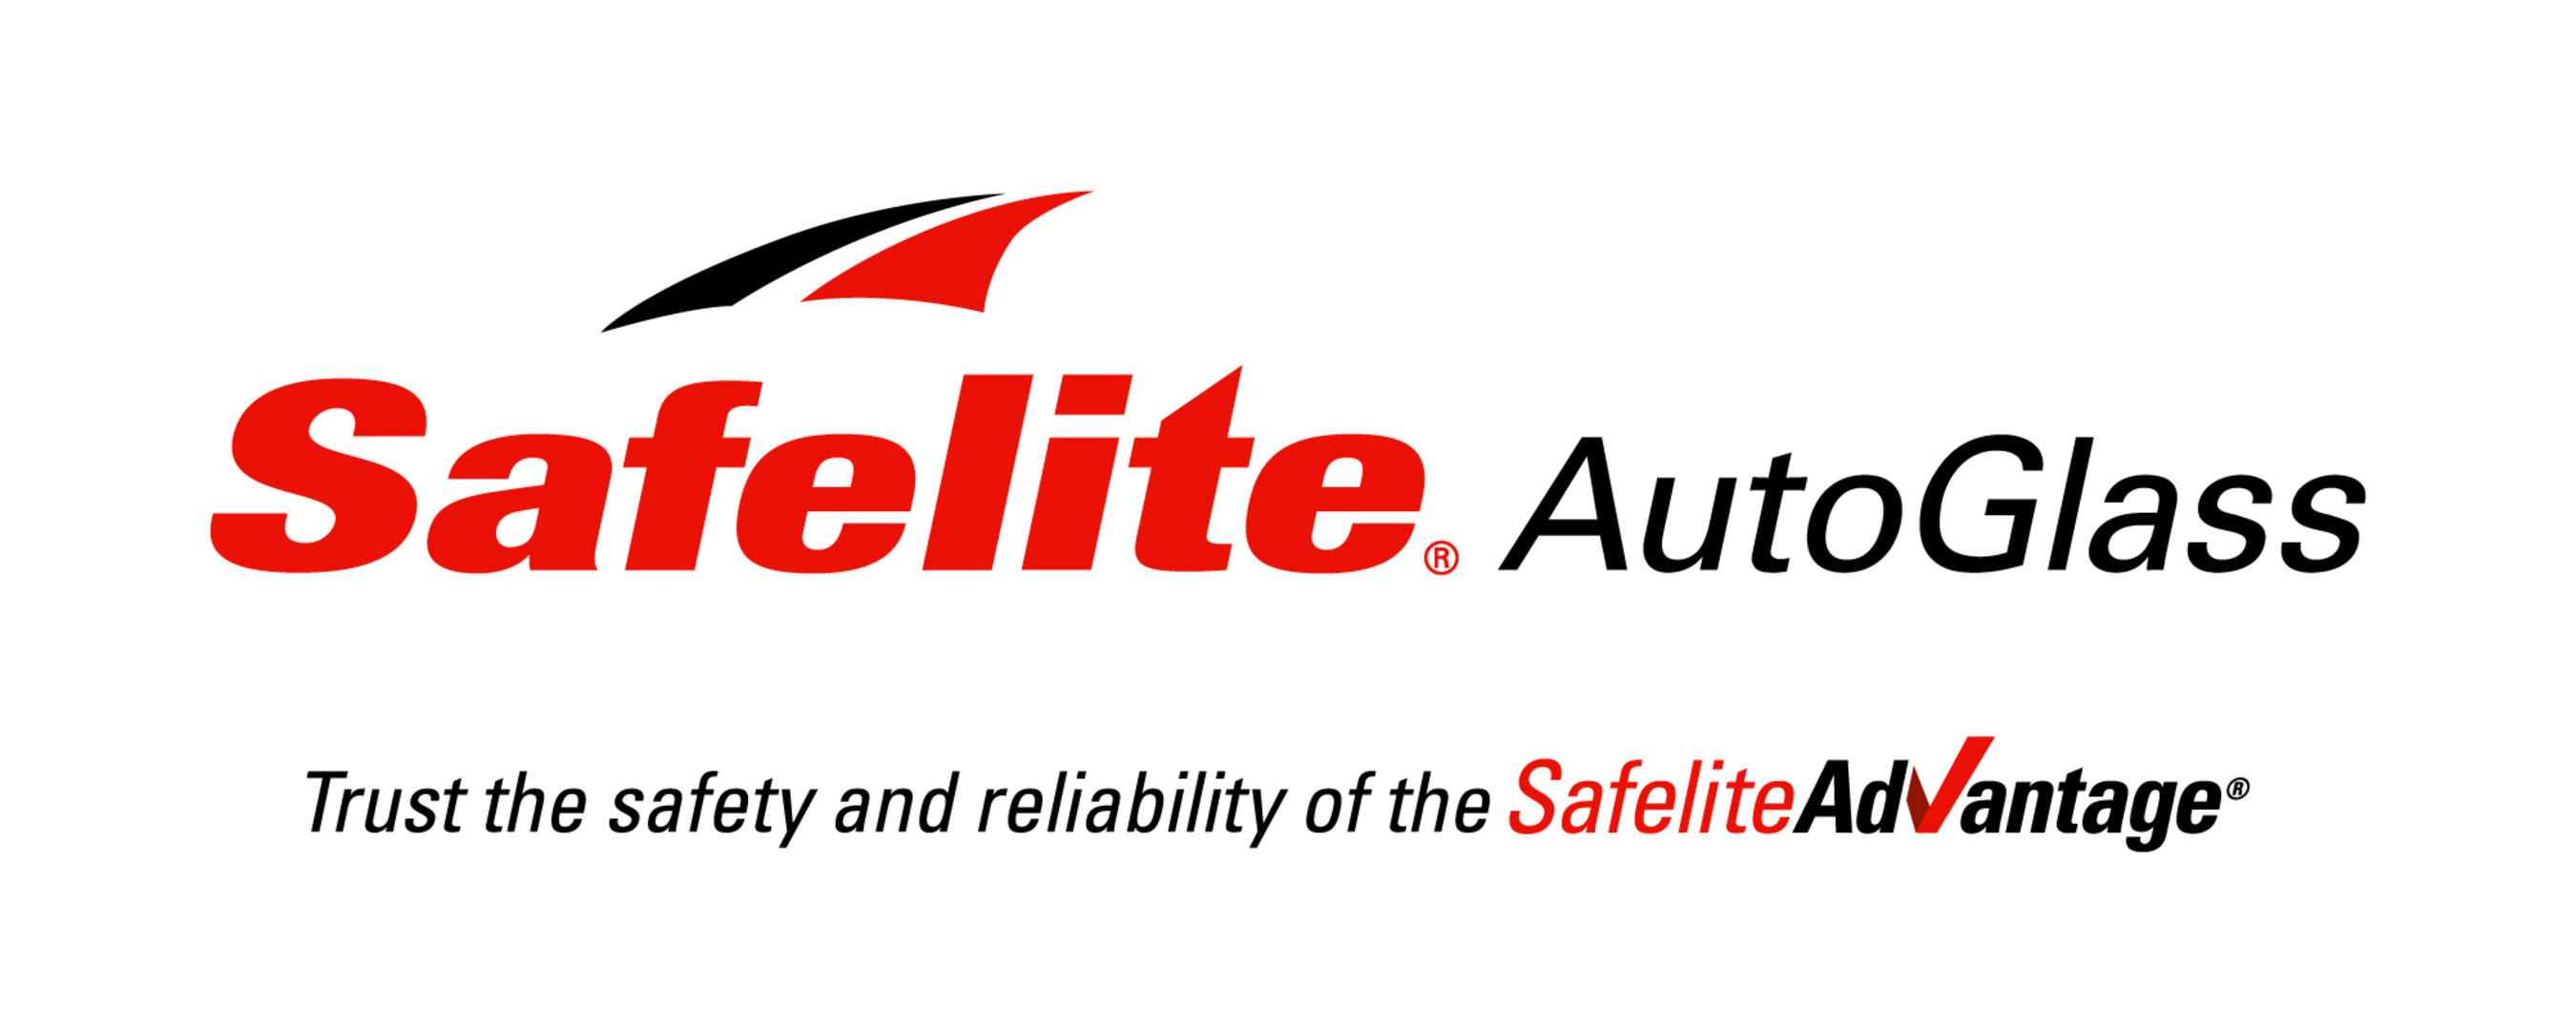 Safelite AutoGlass Logo. (PRNewsFoto/Safelite AutoGlass)